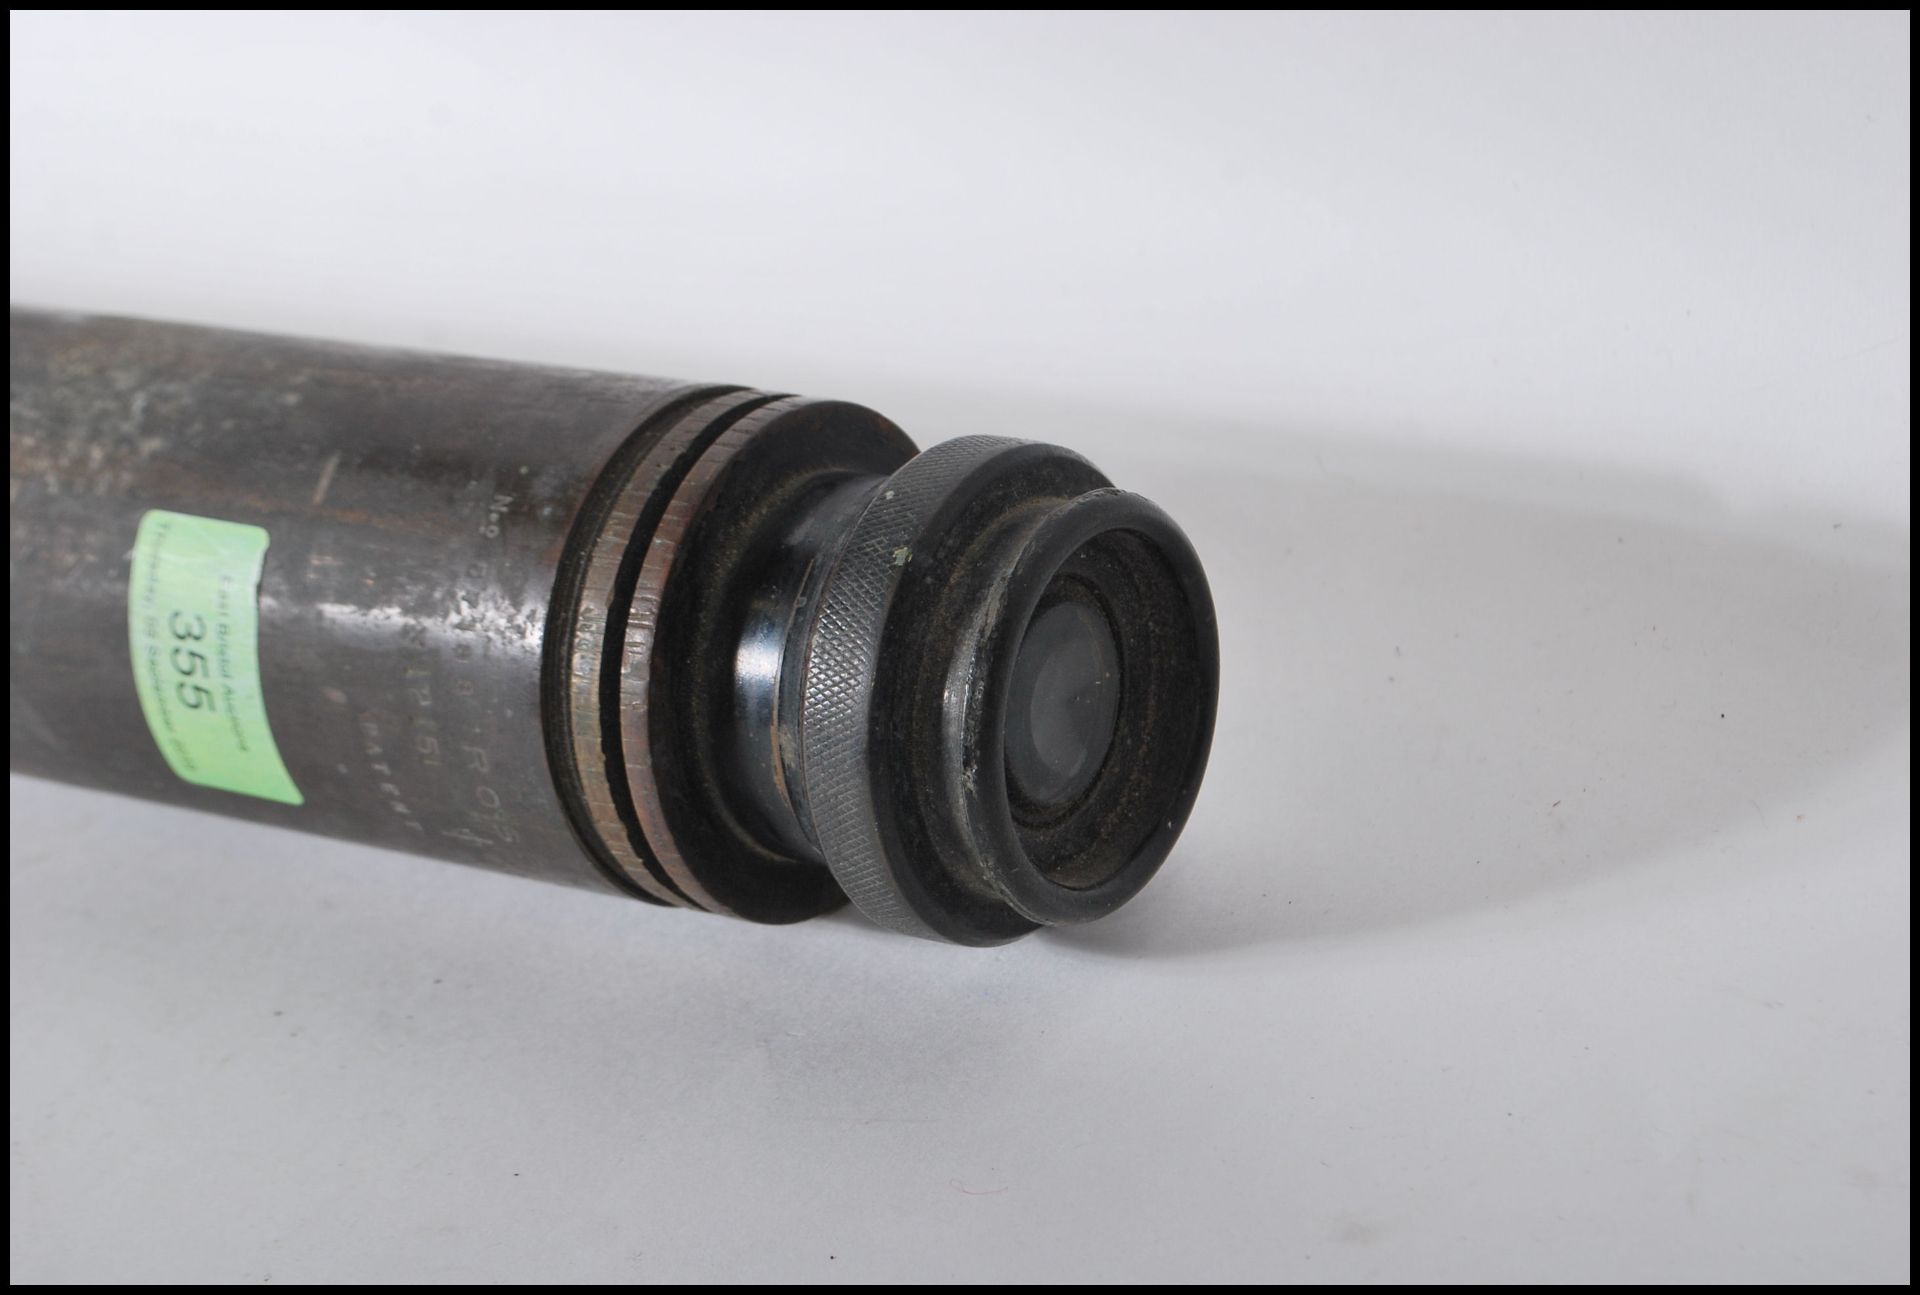 A WW2 Second World War gun sight / heavy artillery gun scope instrument by Ross London, patent no. - Bild 4 aus 4